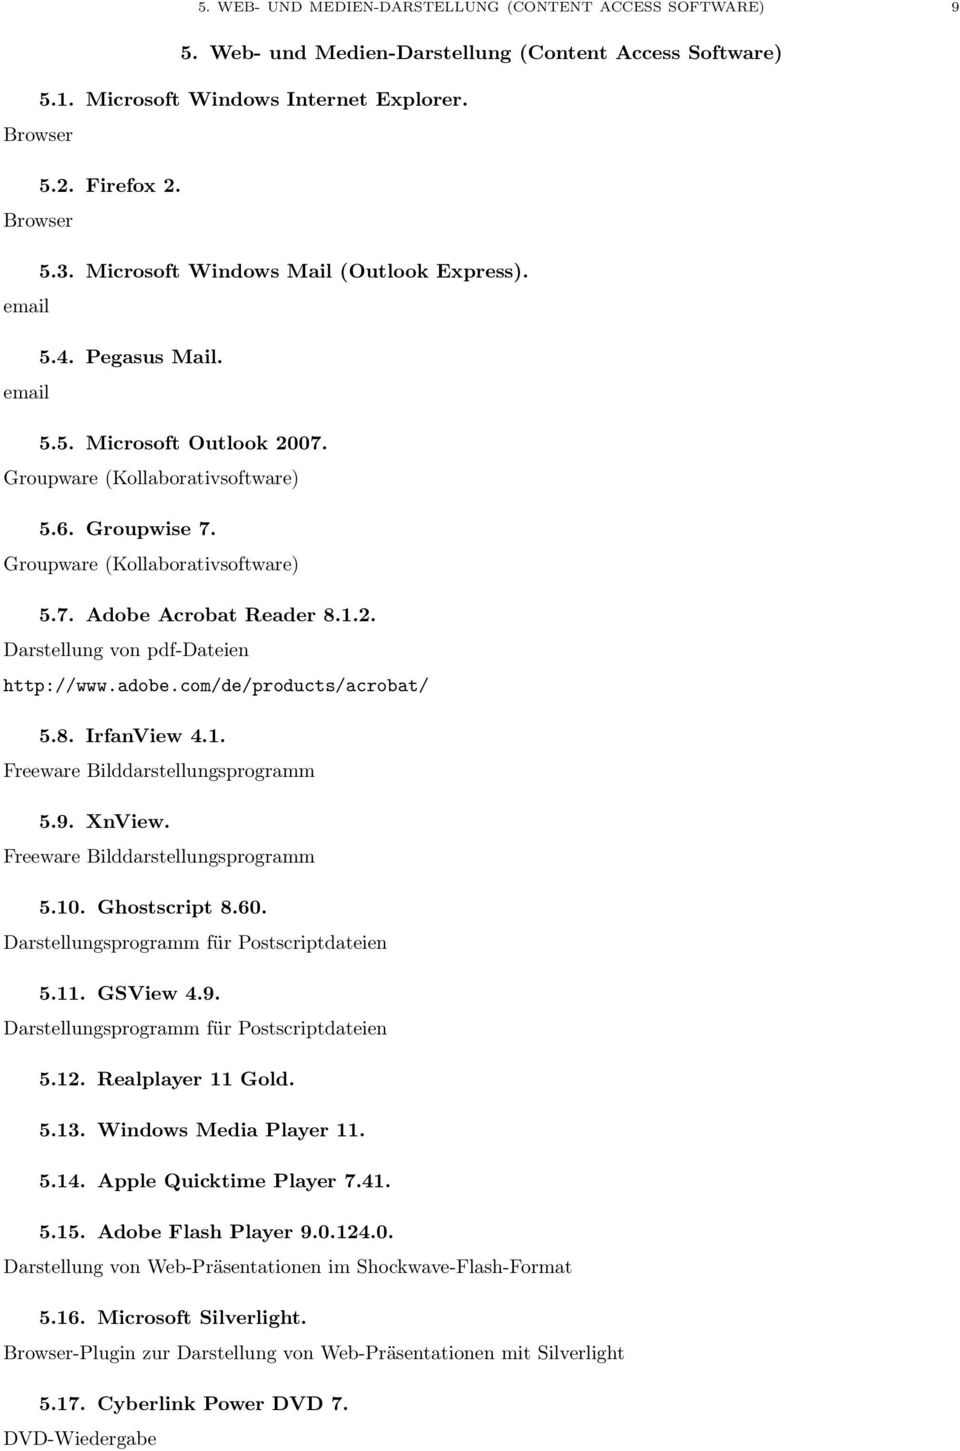 1.2. Darstellung von pdf-dateien http://www.adobe.com/de/products/acrobat/ 5.8. IrfanView 4.1. Freeware Bilddarstellungsprogramm 5.9. XnView. Freeware Bilddarstellungsprogramm 5.10. Ghostscript 8.60.